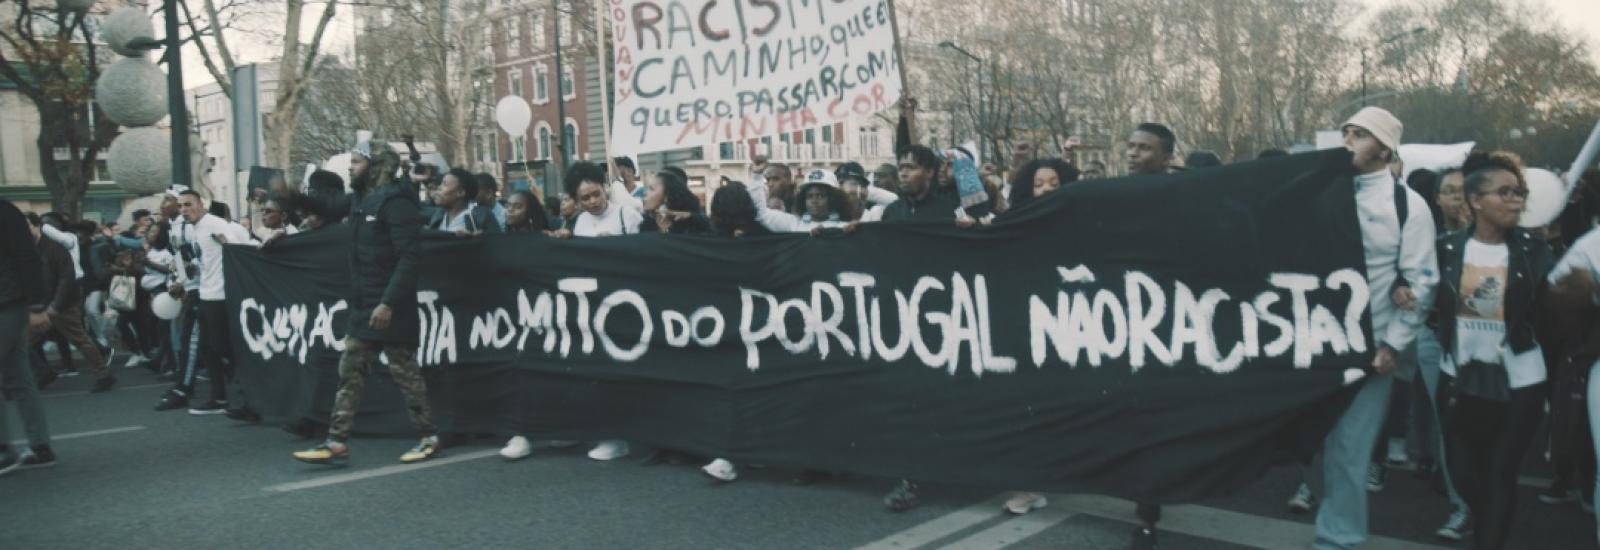 Manifestação antirracista Portugal